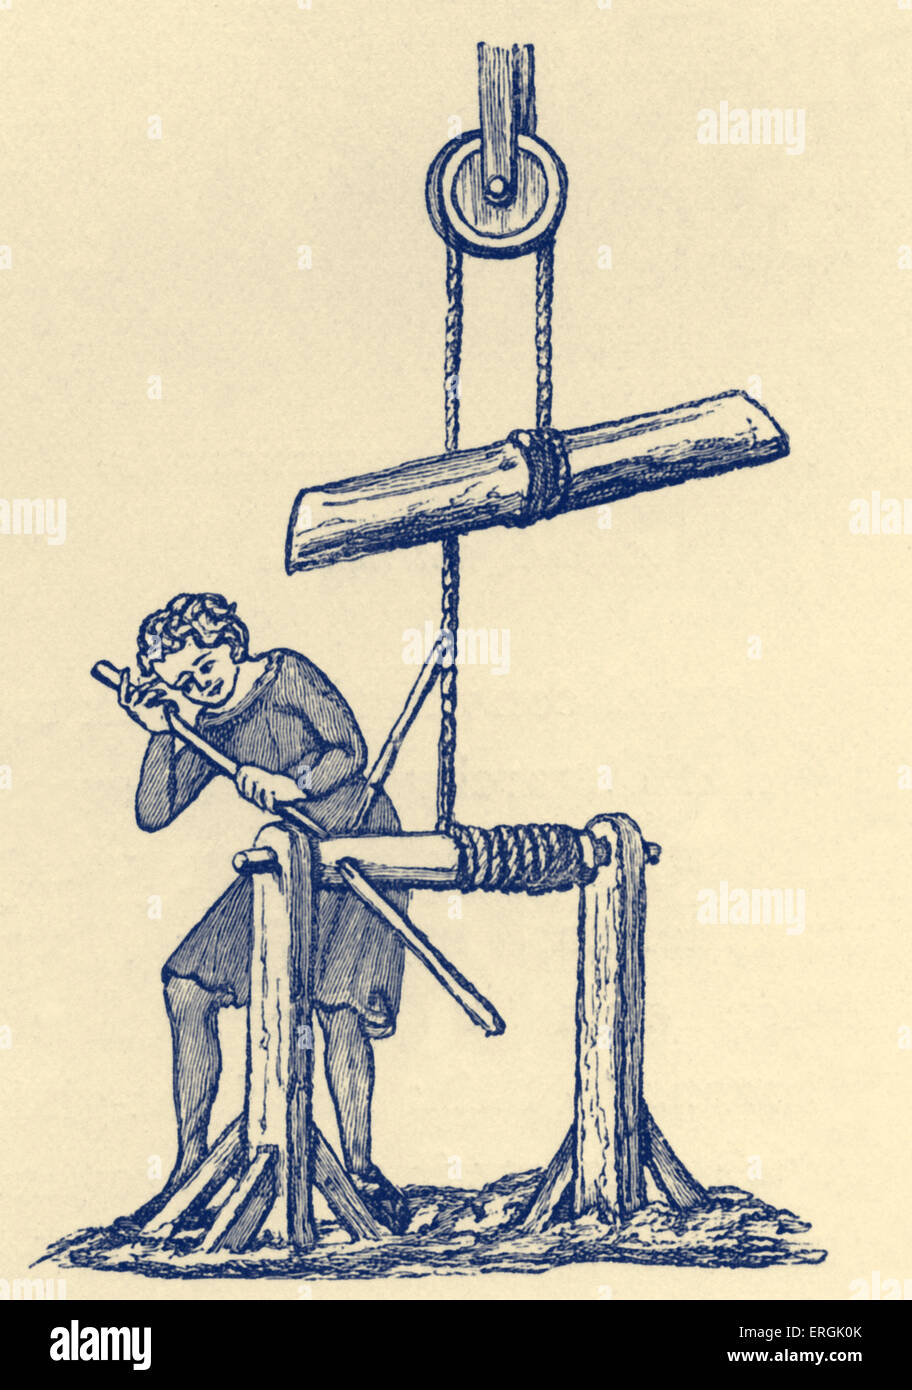 Rodillo, principios del siglo 14. Aparatos para mover los pesos pesados. Foto de stock